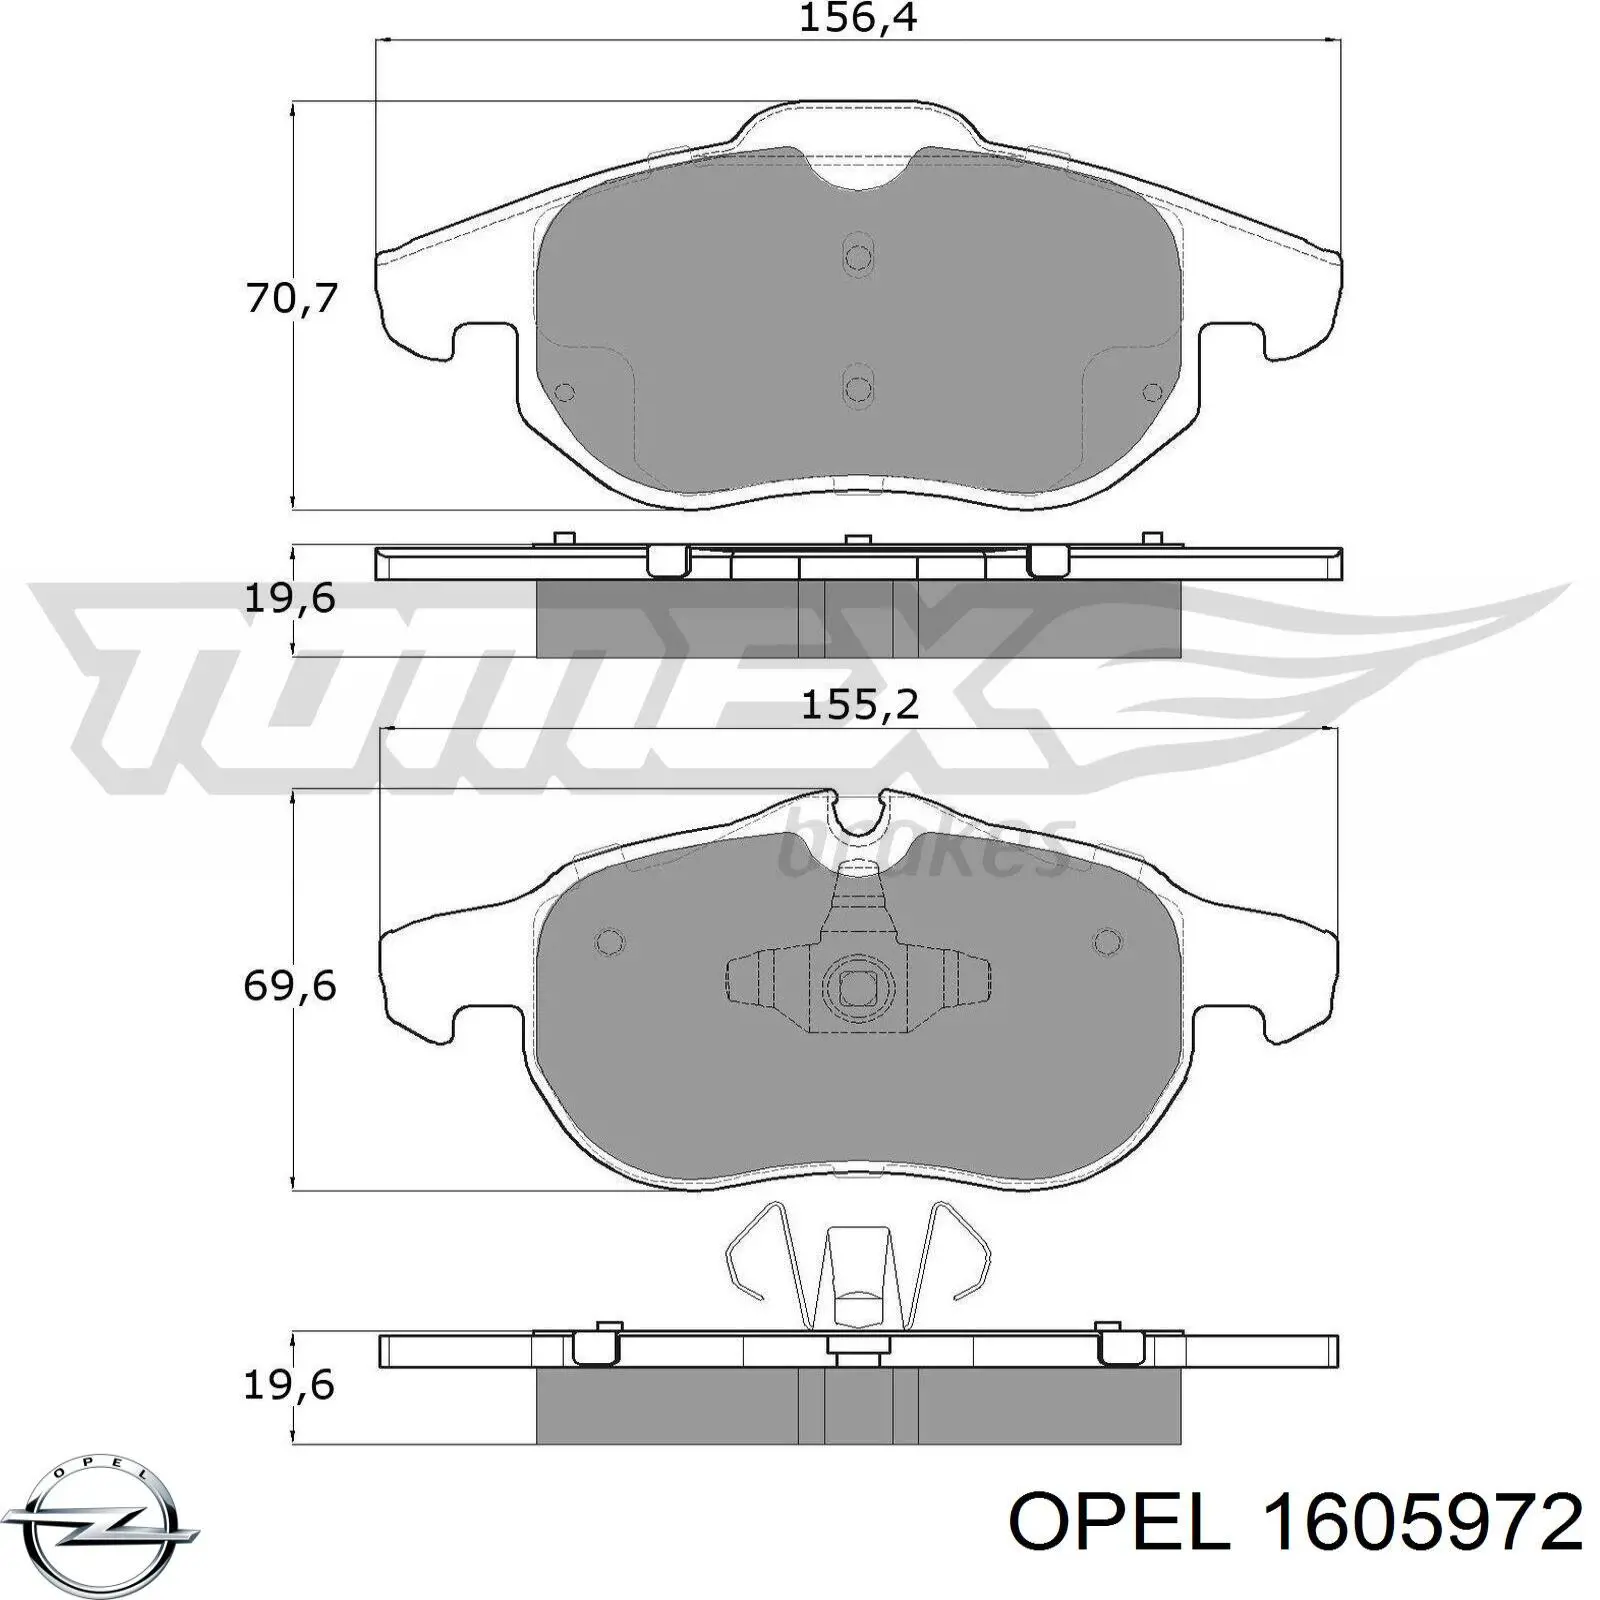 1605972 Opel колодки тормозные передние дисковые